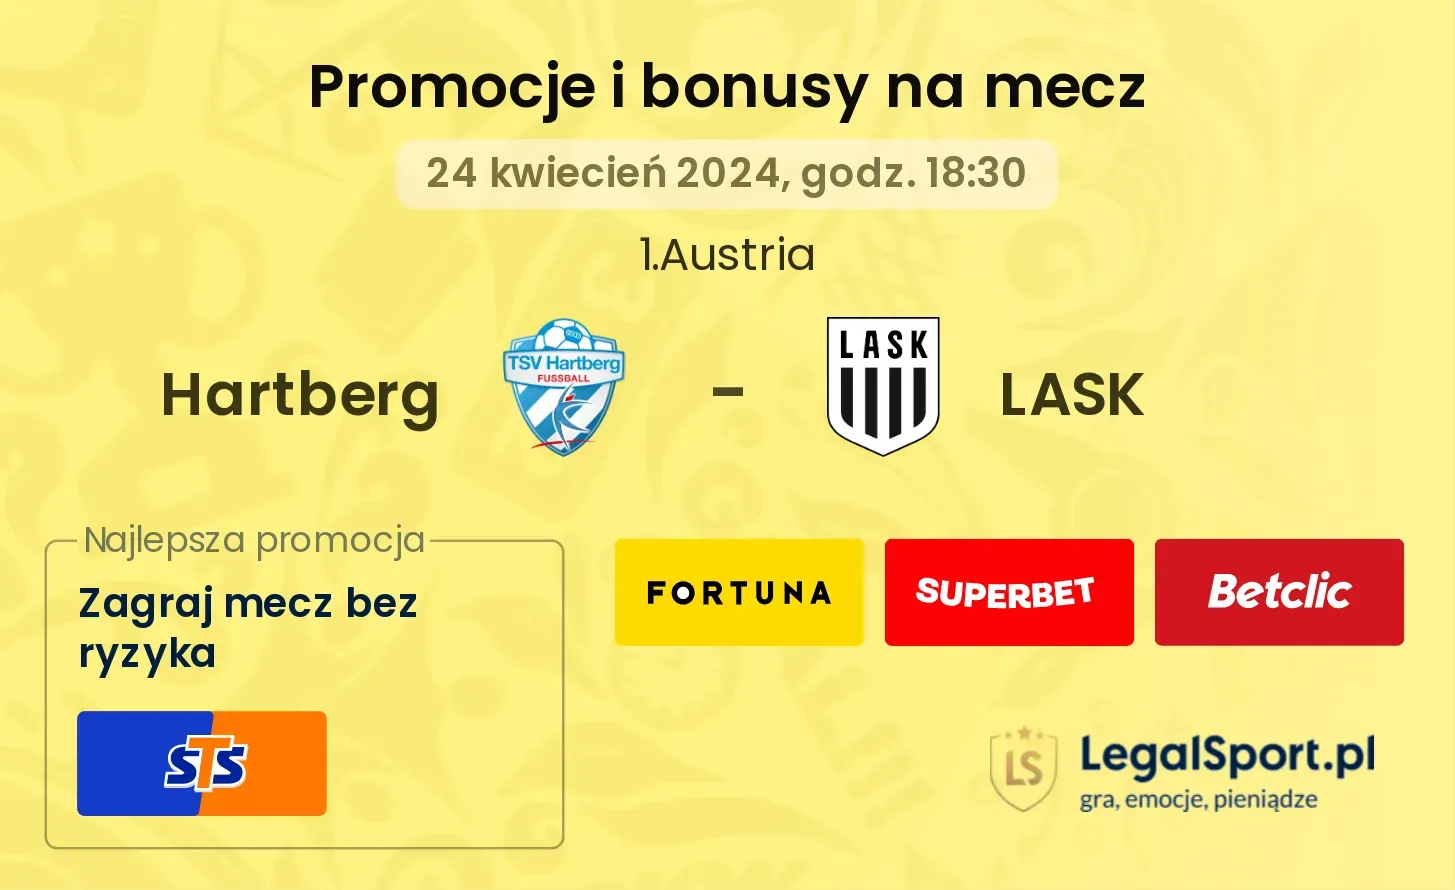 Hartberg - LASK promocje bonusy na mecz